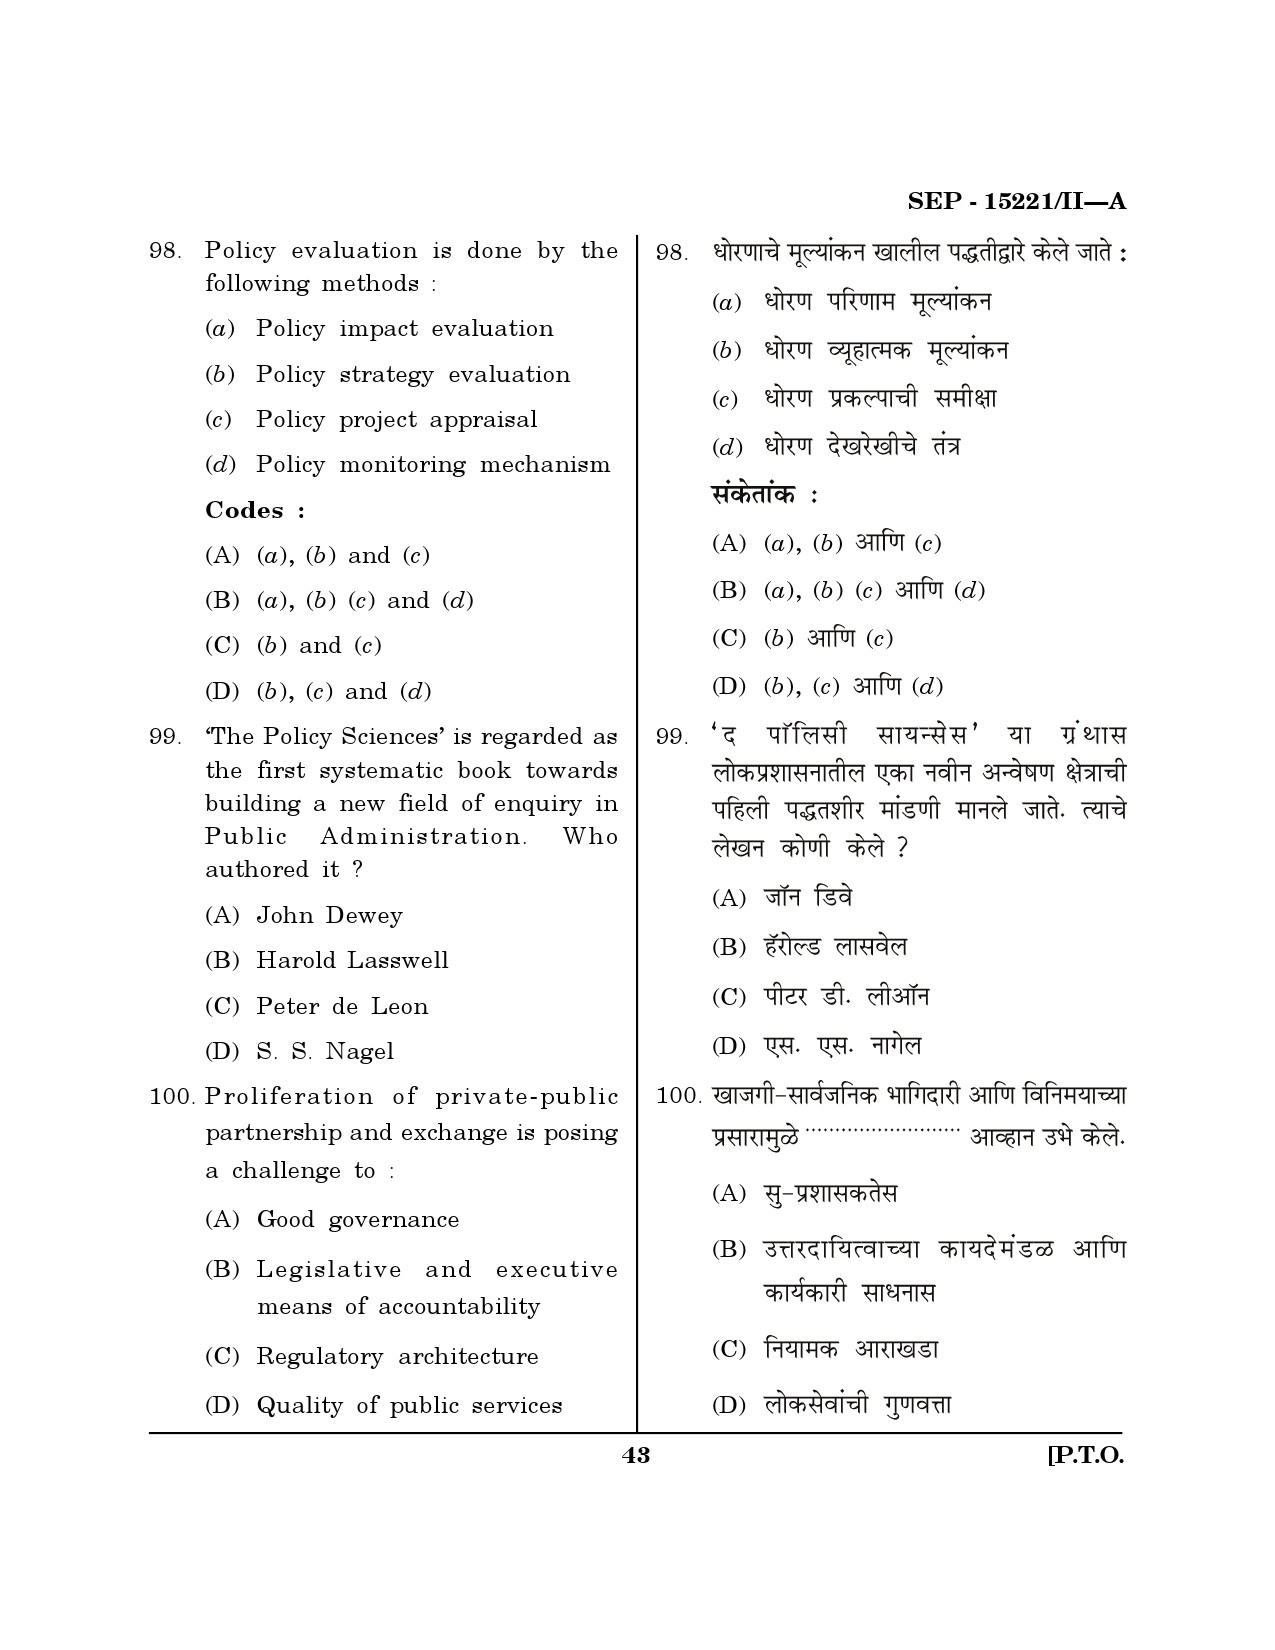 Maharashtra SET Political Science Exam Question Paper September 2021 42